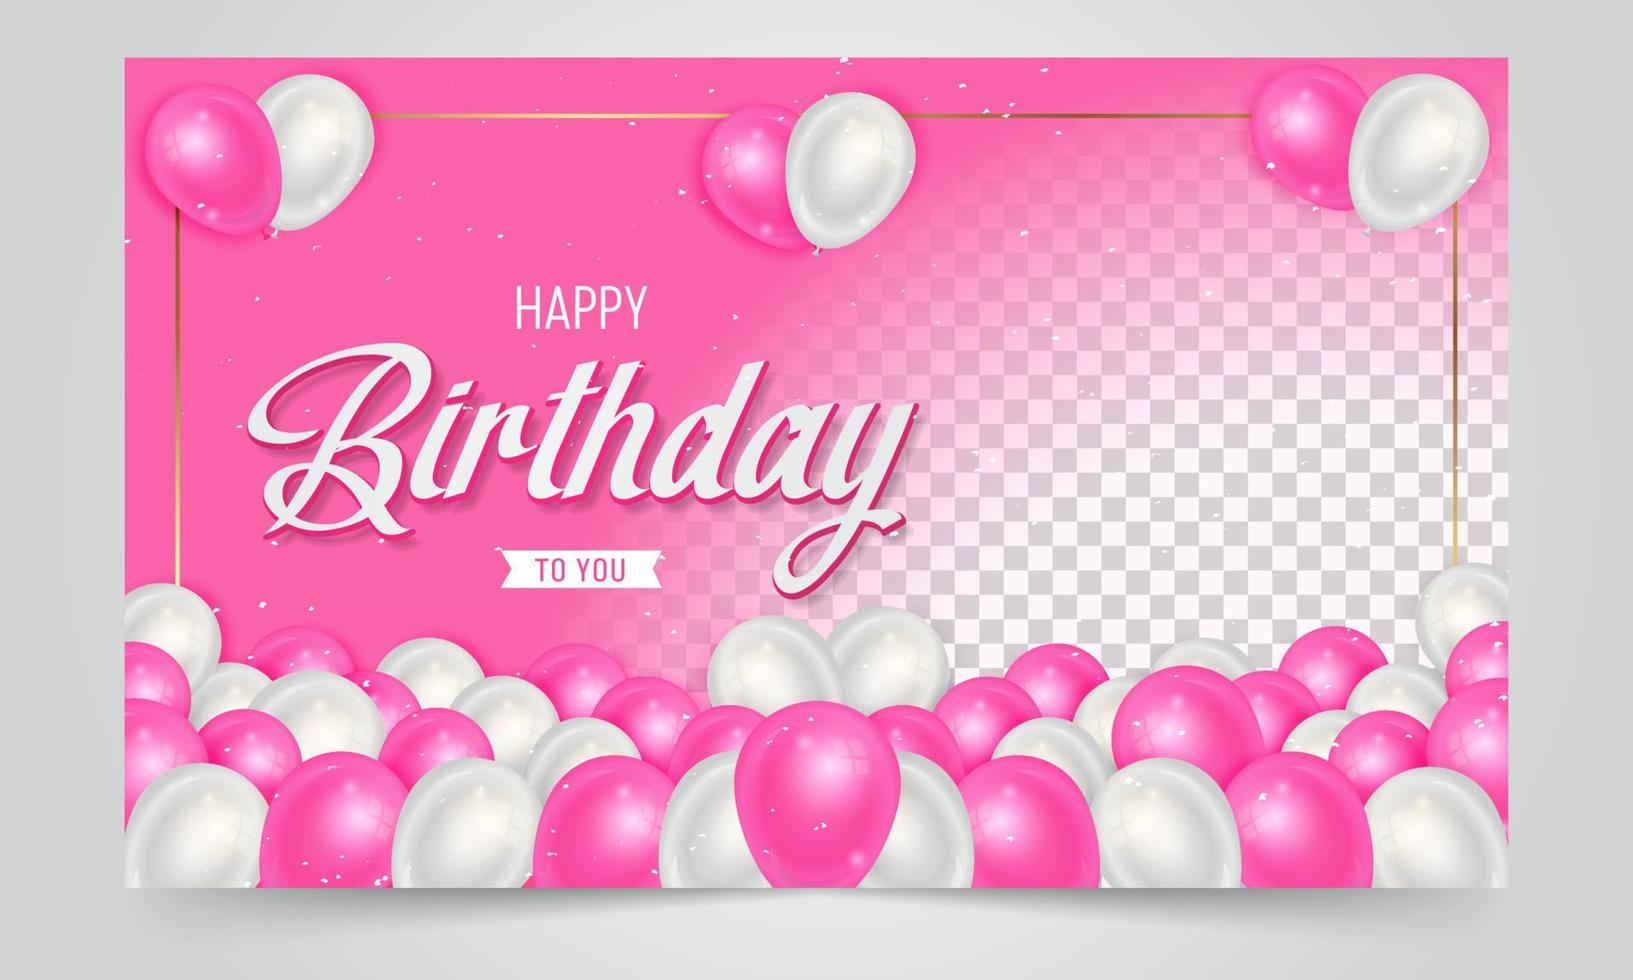 alles gute zum geburtstag banner design mit rosa und weißen luftballons illustration auf farbverlauf hintergrund vektor